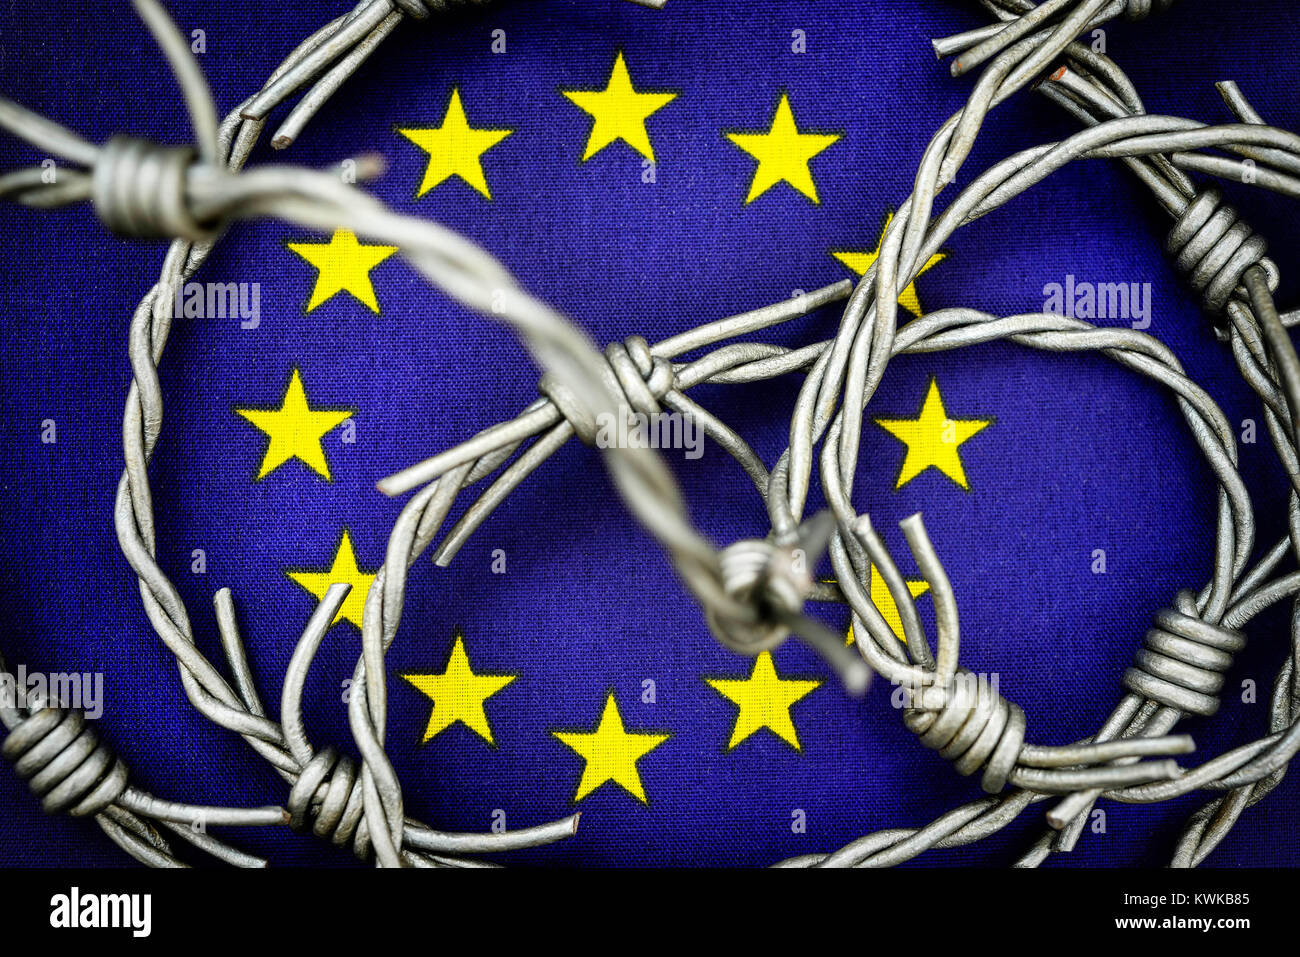 Filo spinato sulla bandiera UE, simbolico foto del rifugiato stream per l'Europa, Stacheldraht auf UE-Fahne, Symbolfoto Fl?chtlingsstrom nach Europa Foto Stock